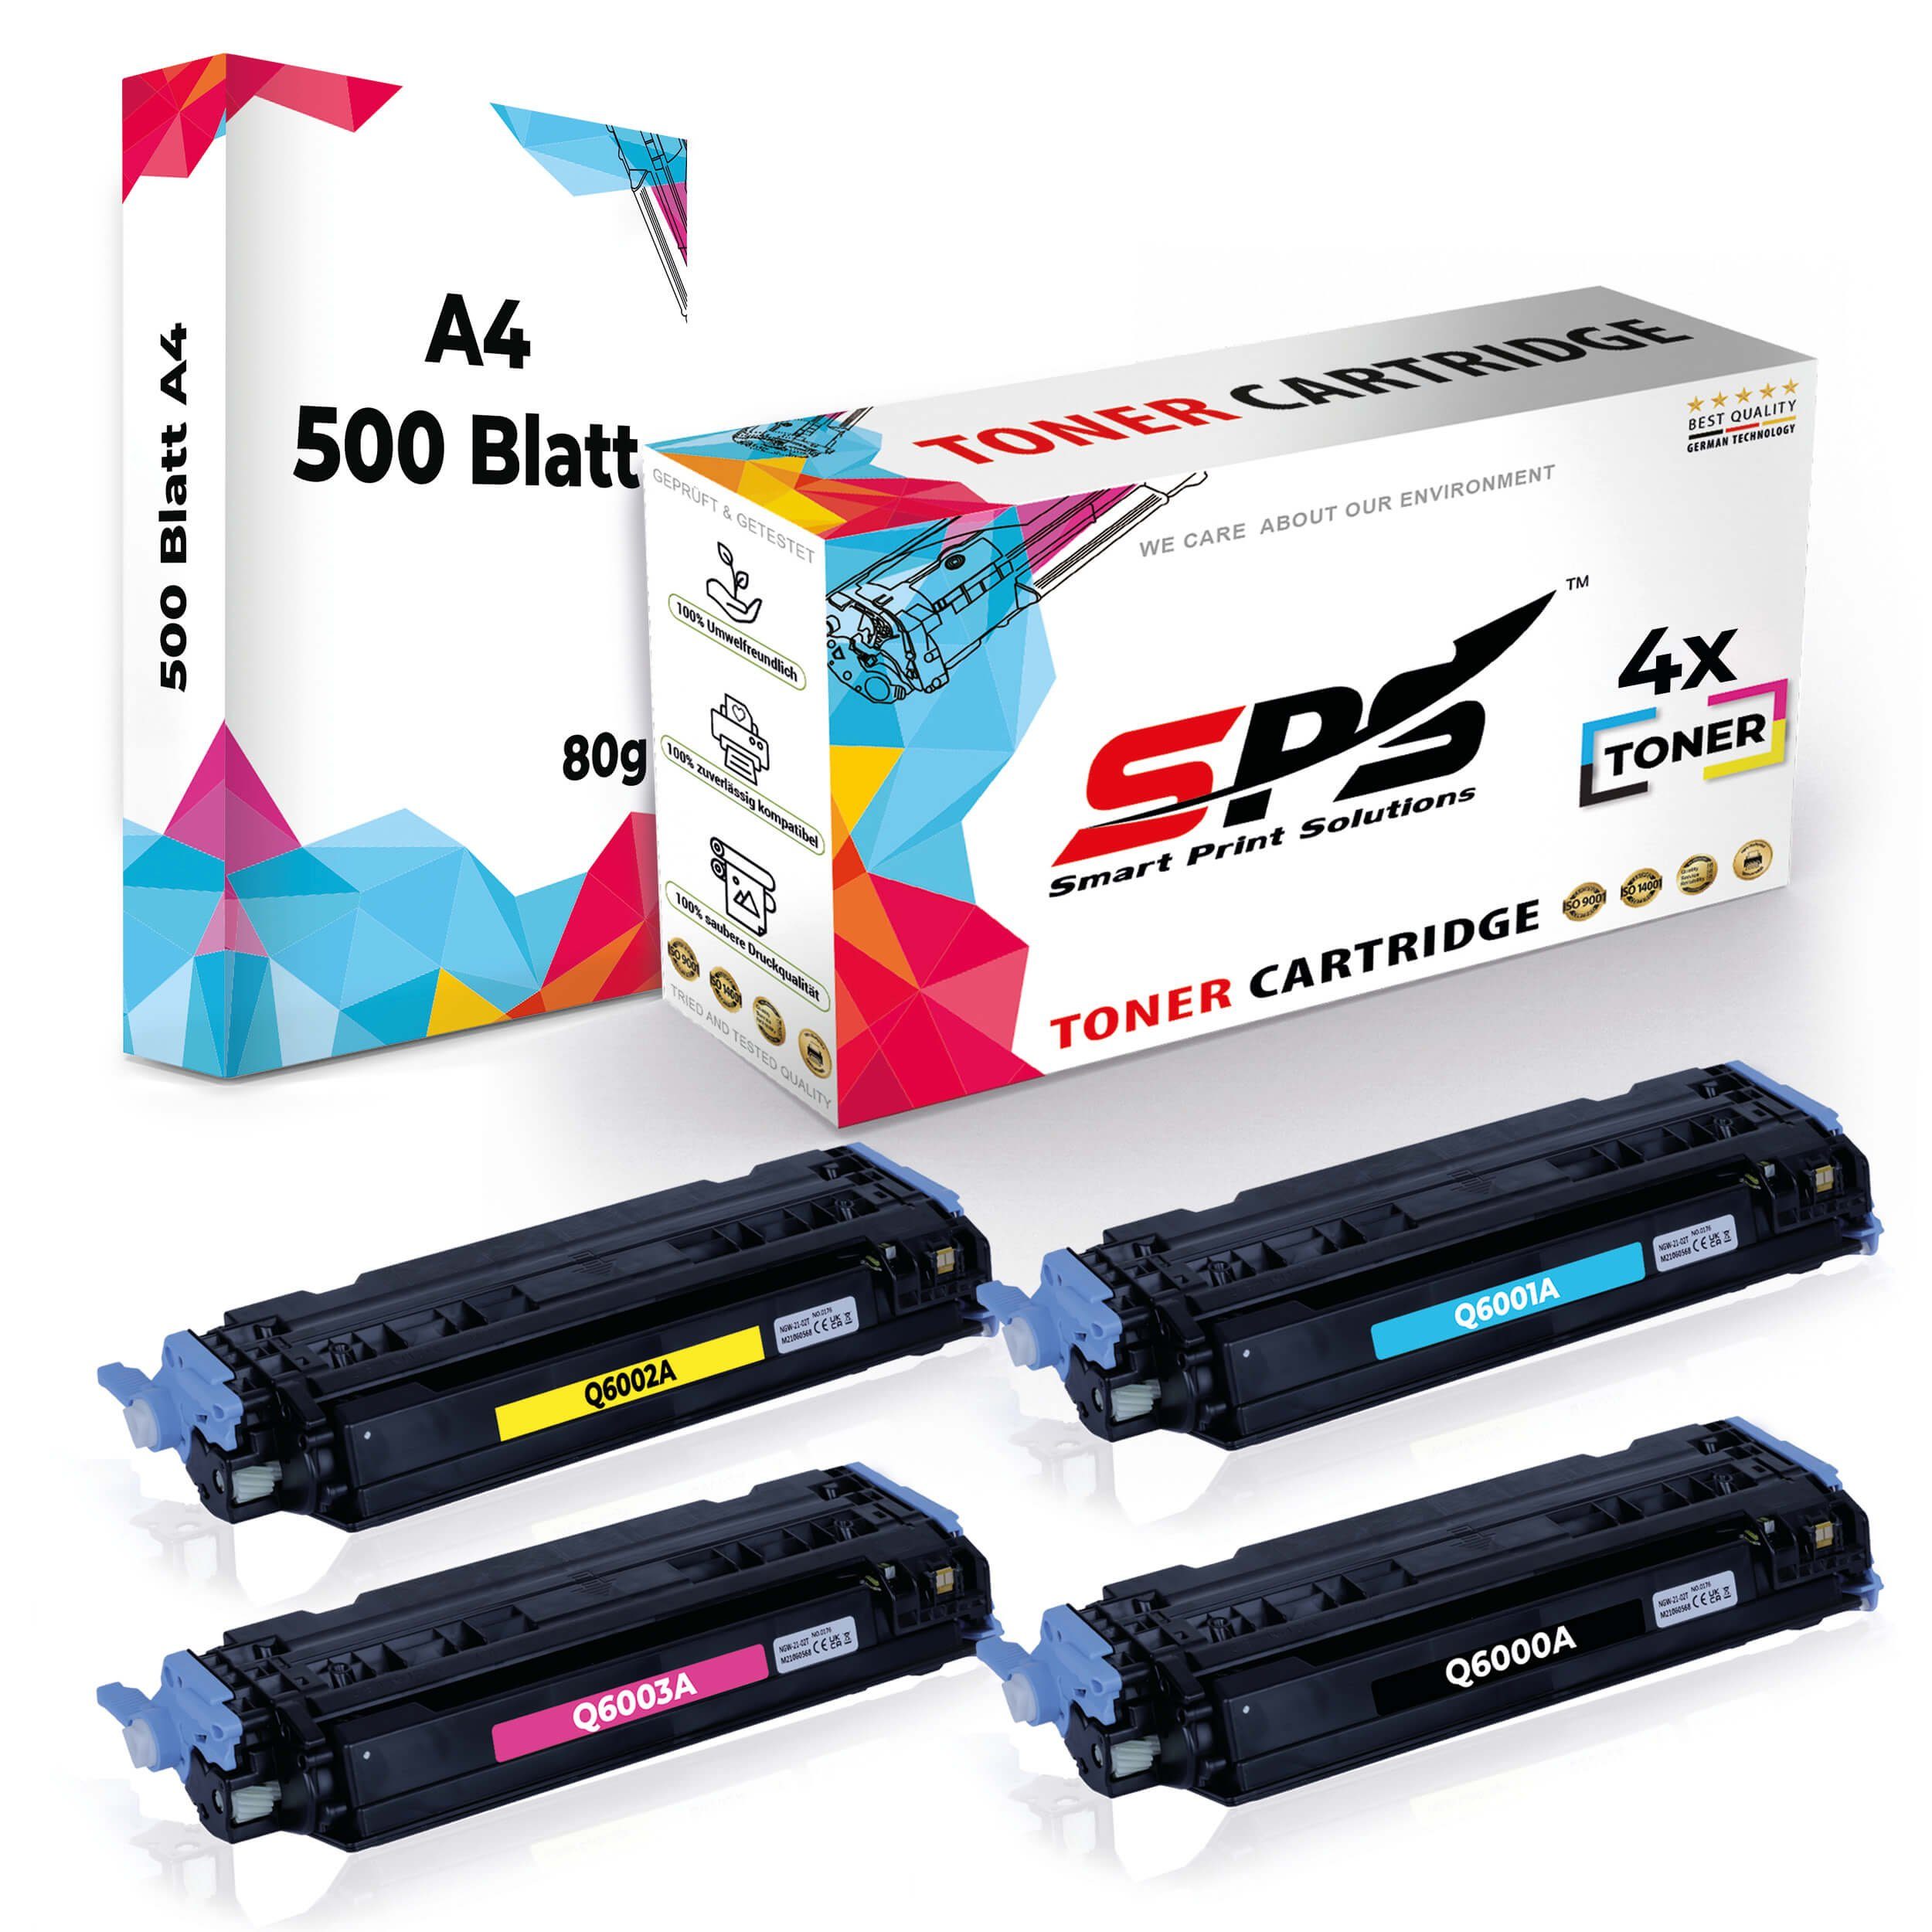 Druckerpapier Set Toner,1x Multipack A4 4x A4 Pack, Druckerpapier) + 4x Tonerkartusche Kompatibel, (5er SPS